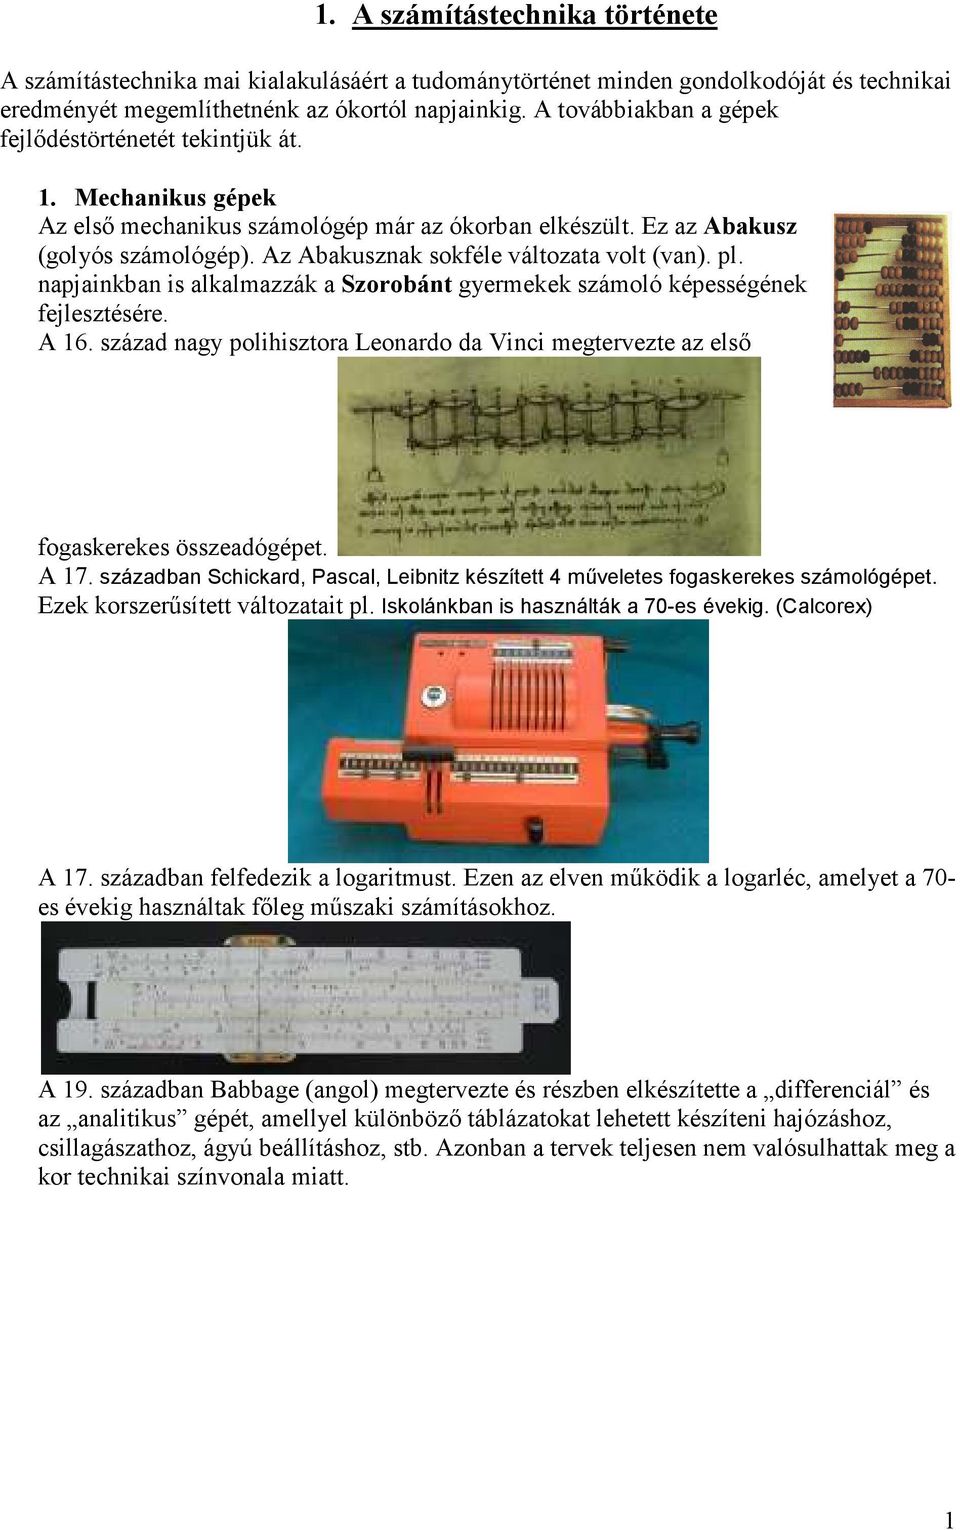 1. A számítástechnika története - PDF Ingyenes letöltés